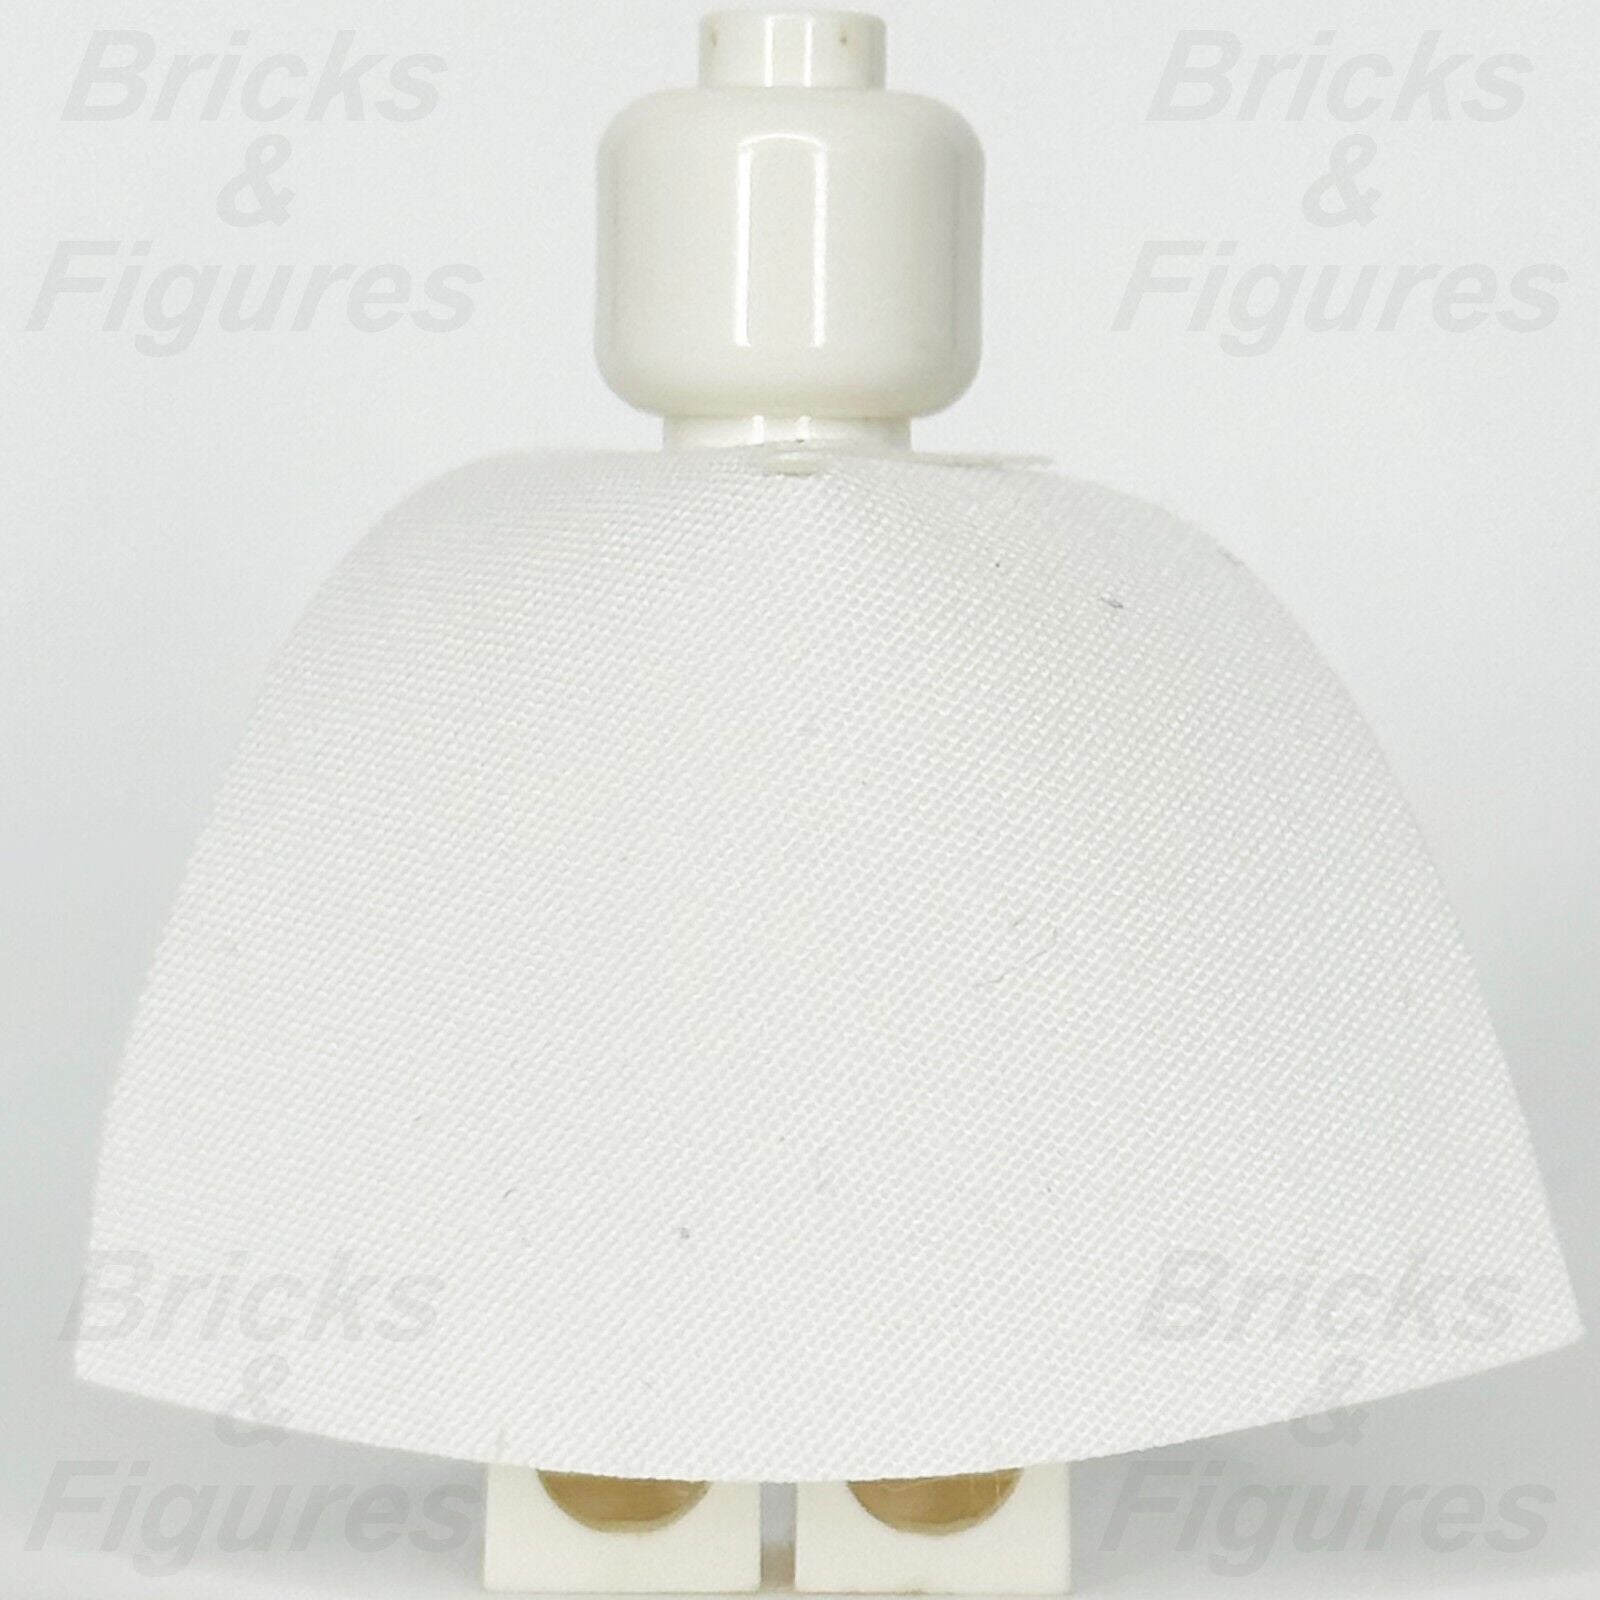 LEGO White Minifigure Cape Cloth Starched Body Wear 3.9cm Part 522c 20458